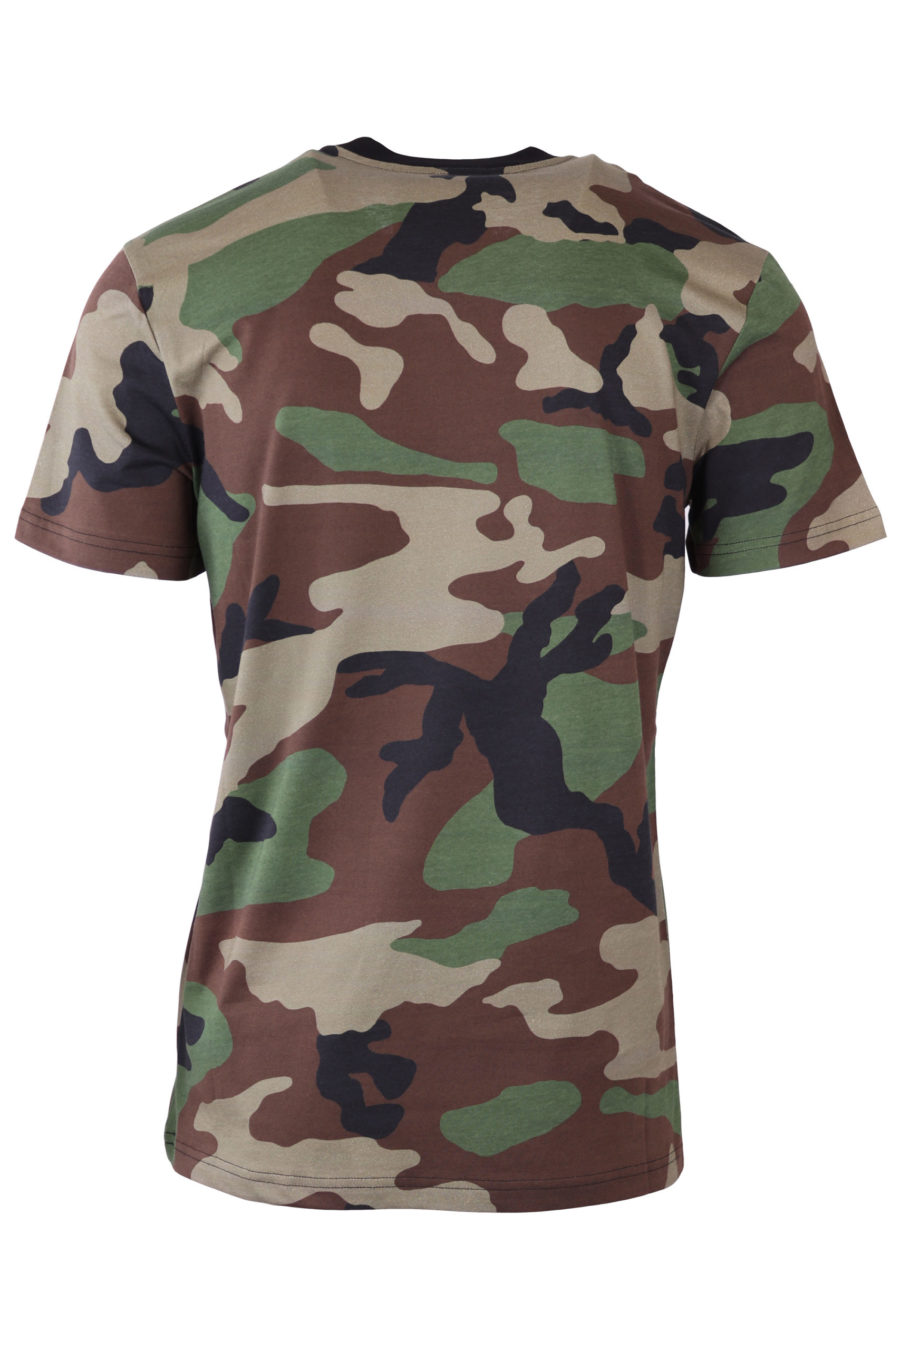 Moschino Couture Militär-T-Shirt mit Logo - IMG 6540 skaliert